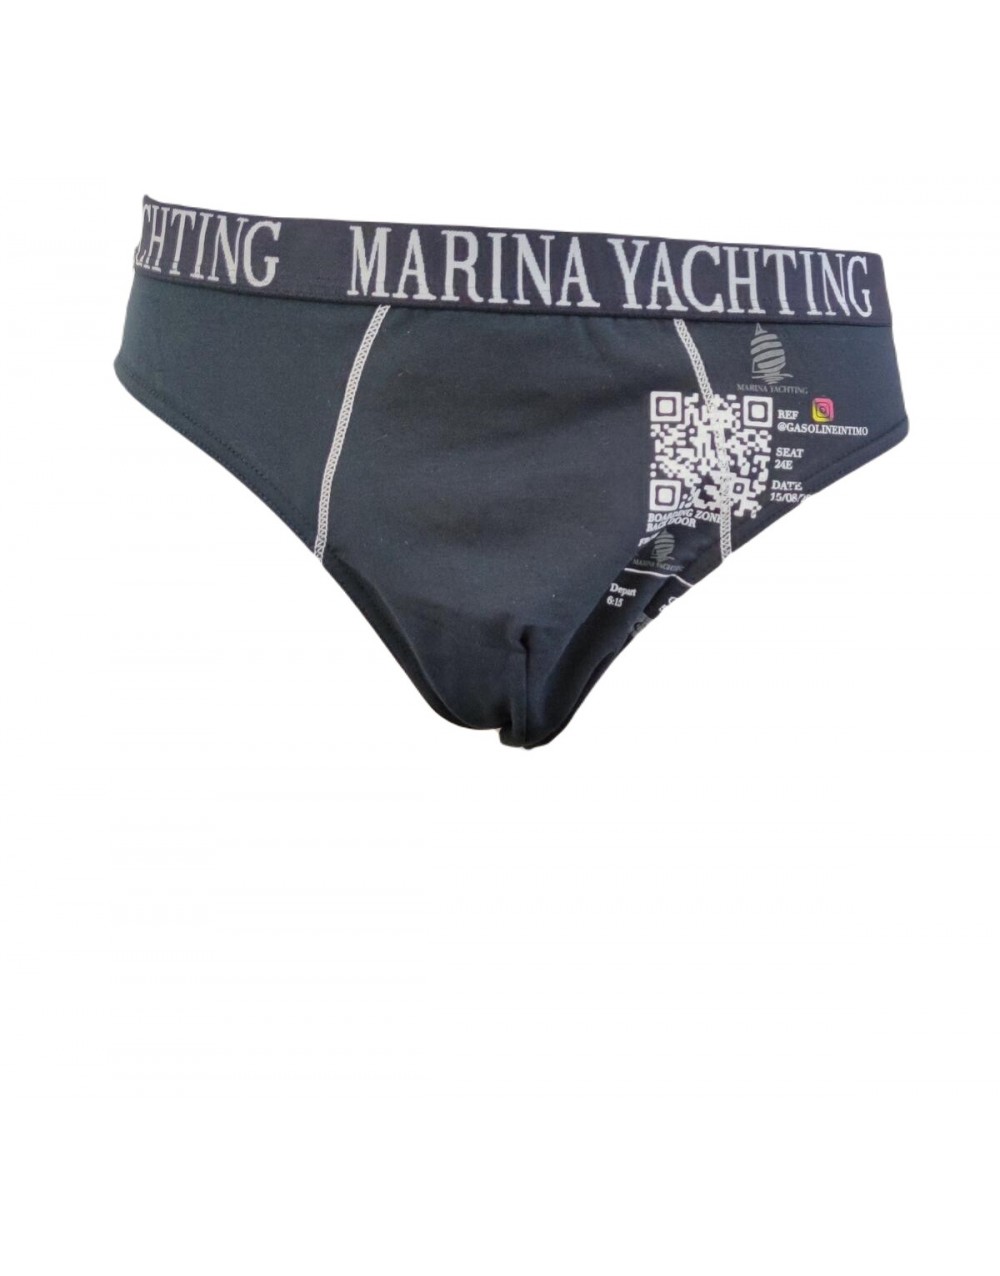 Confezione 6 Slip uomo in cotone colori blu grigio e nero MY705 - Marina Yachting